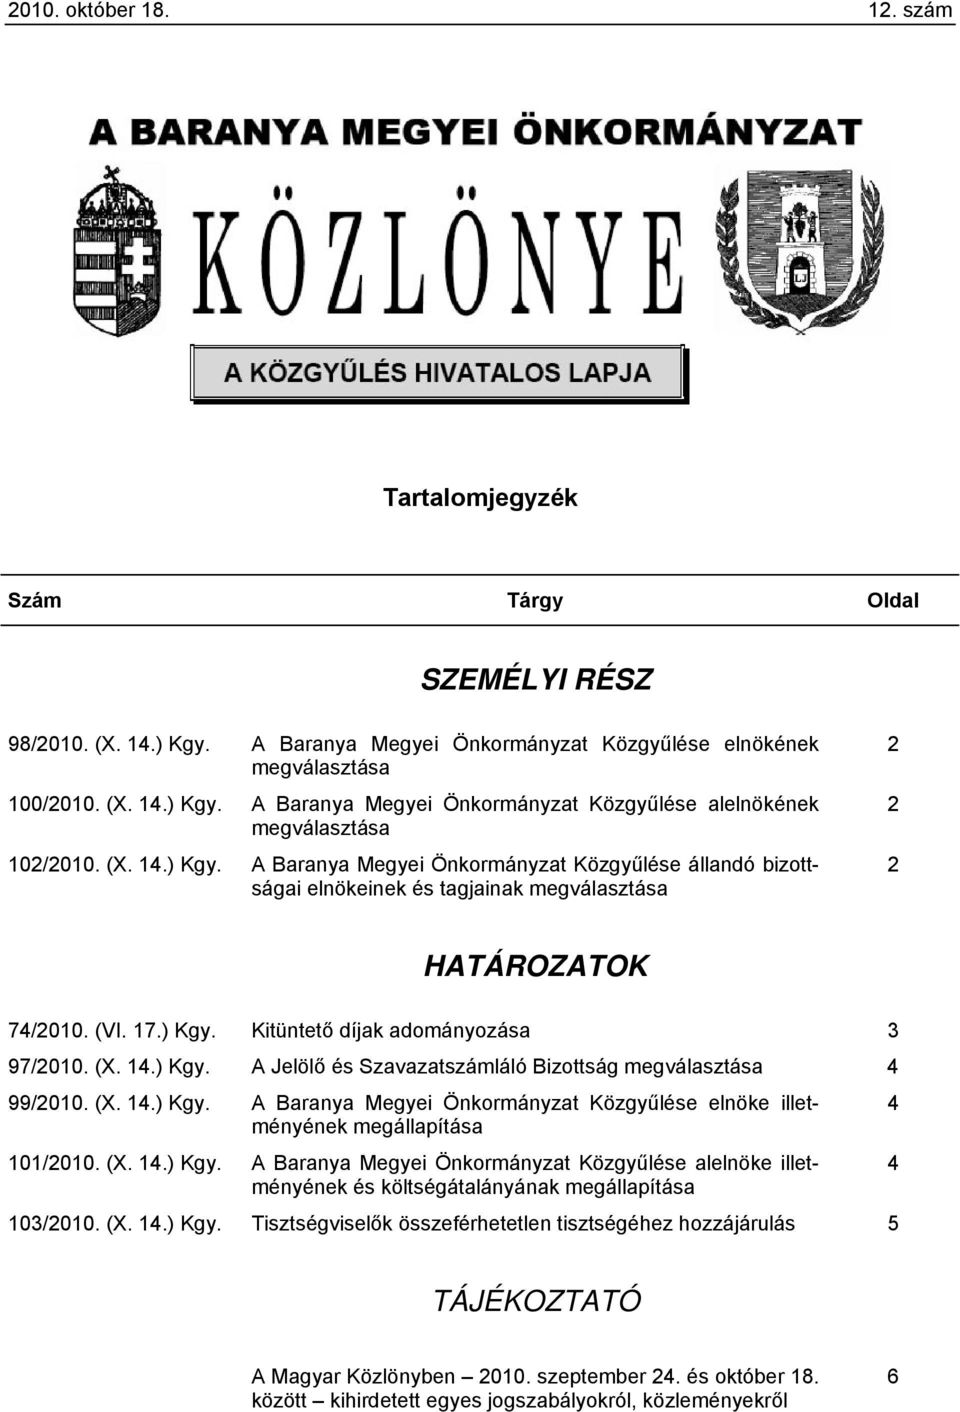 (X. 14.) Kgy. alelnöke illetményének 4 és költségátalányának megállapítása 103/2010. (X. 14.) Kgy. Tisztségviselők összeférhetetlen tisztségéhez hozzájárulás 5 TÁJÉKOZTATÓ A Magyar Közlönyben 2010.